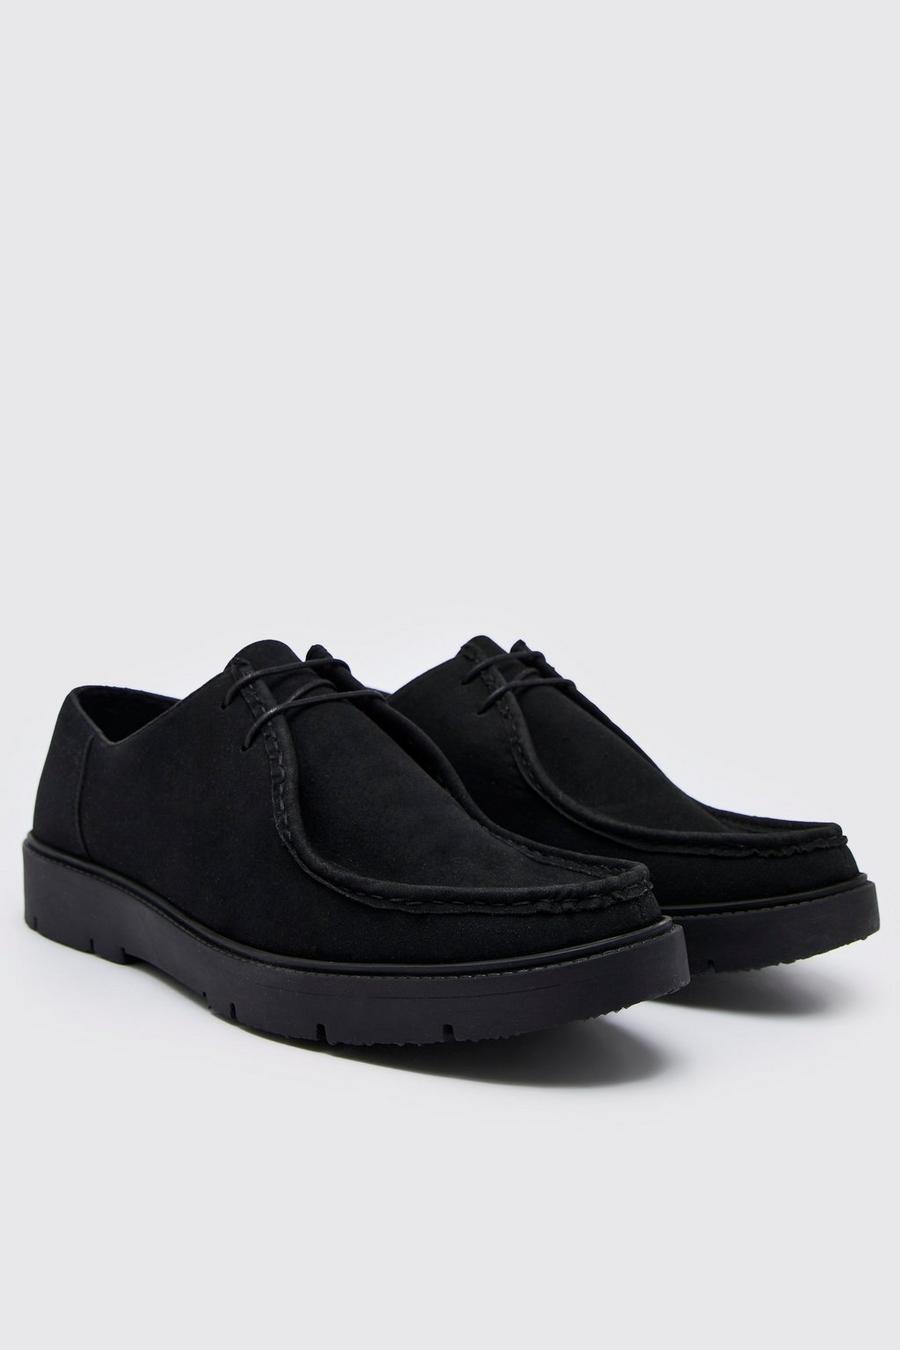 שחור black נעלי דרבי מבד דמוי זמש